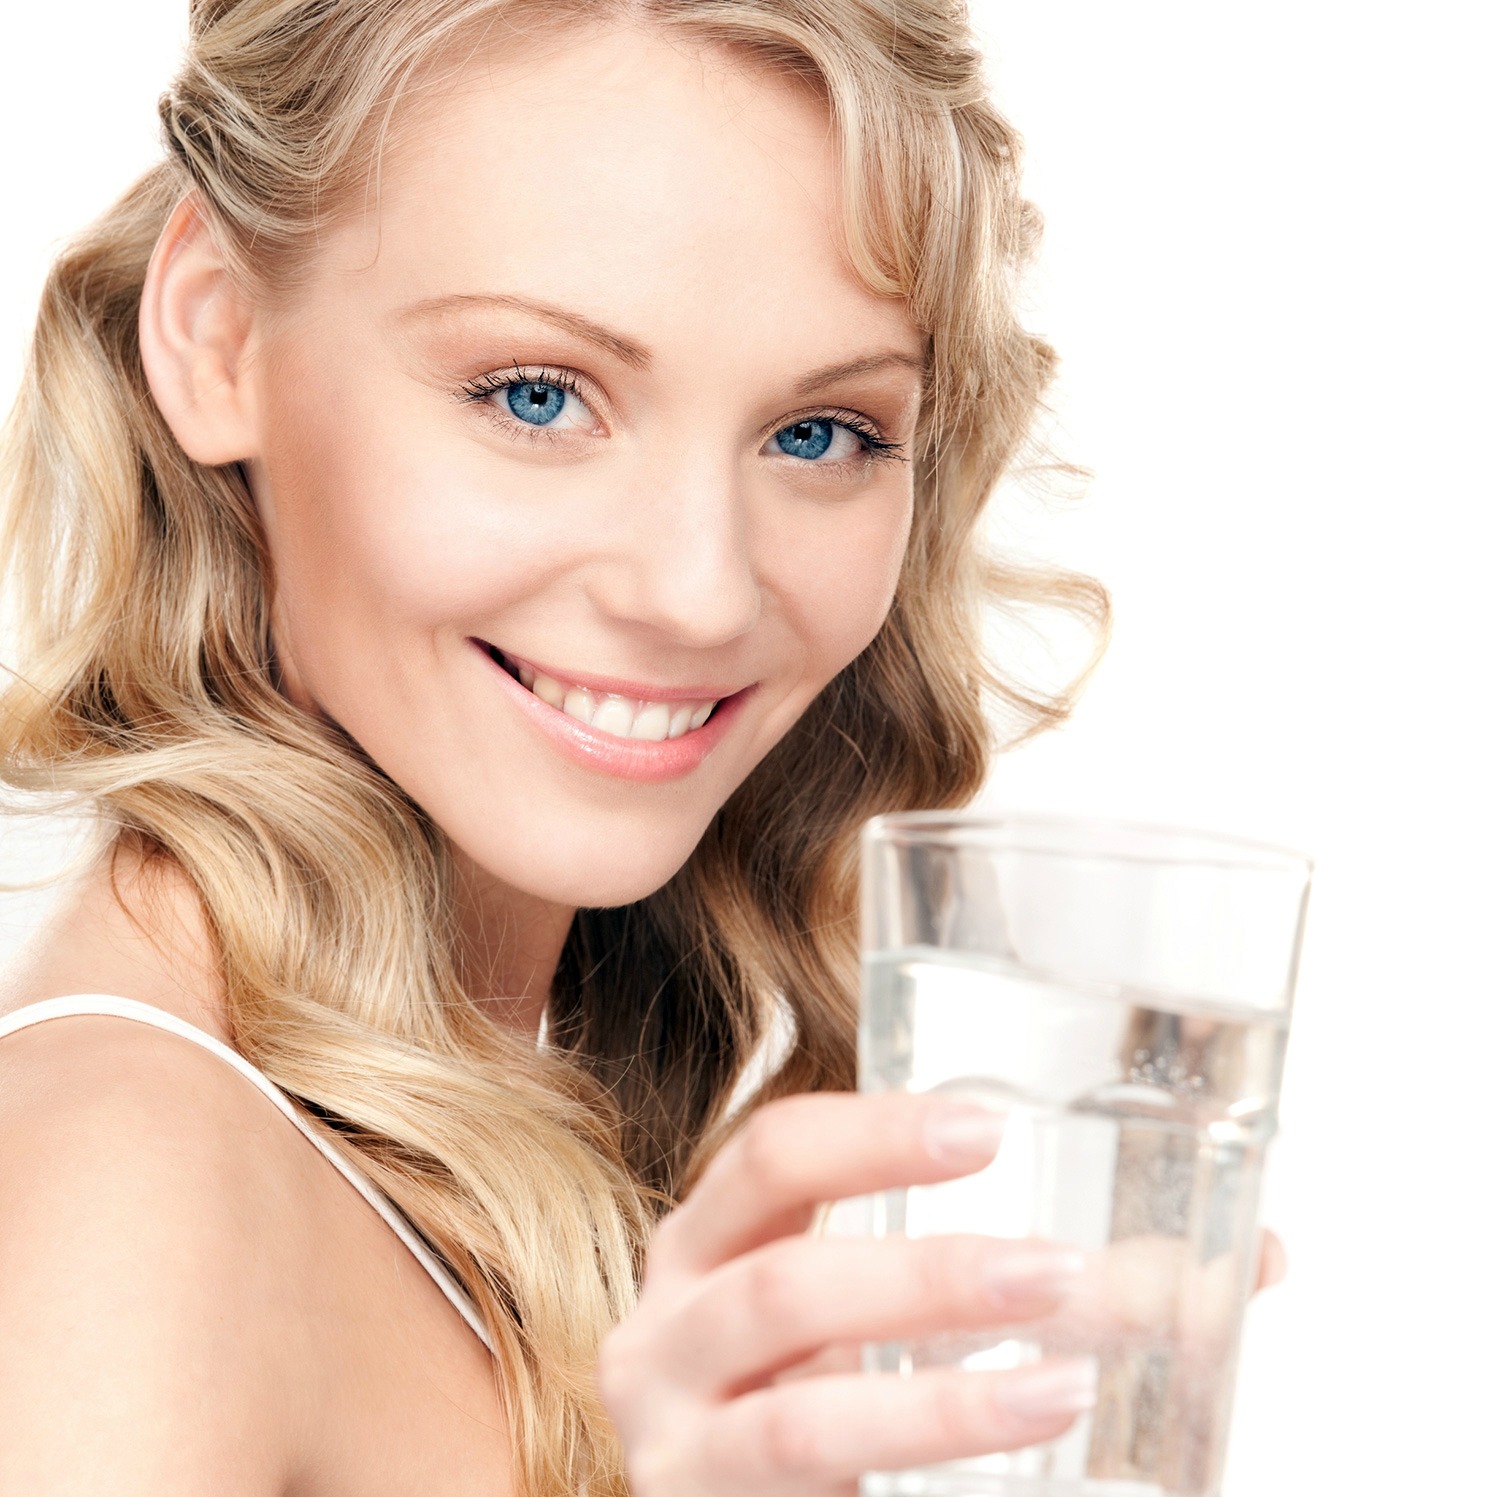 Uống đủ nước giúp tuyến giáp khỏe mạnh hơn